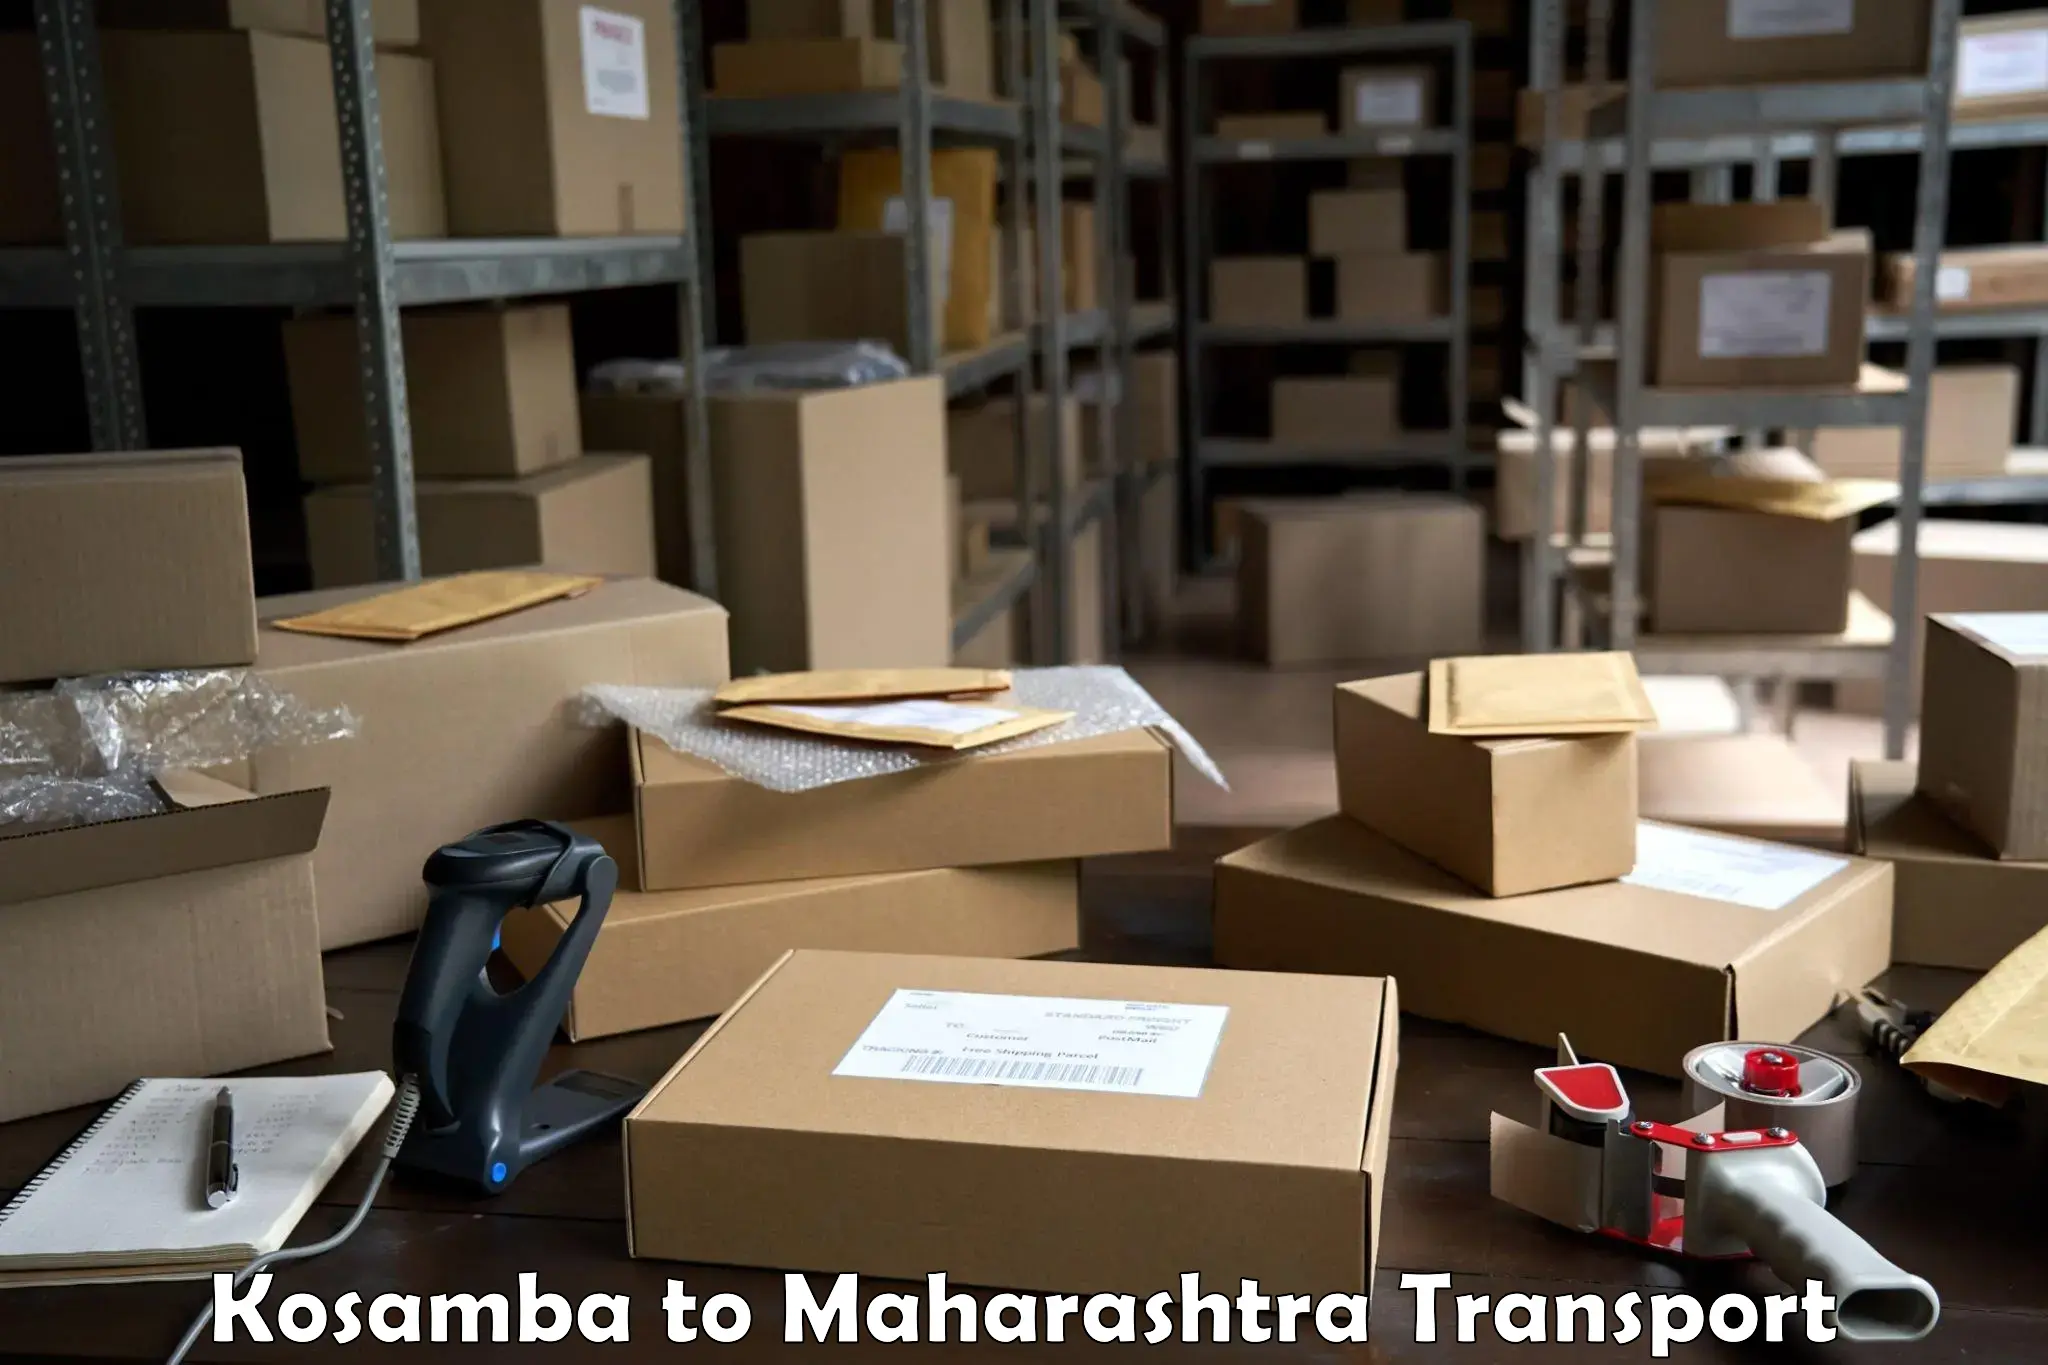 Truck transport companies in India Kosamba to Waranga Phata